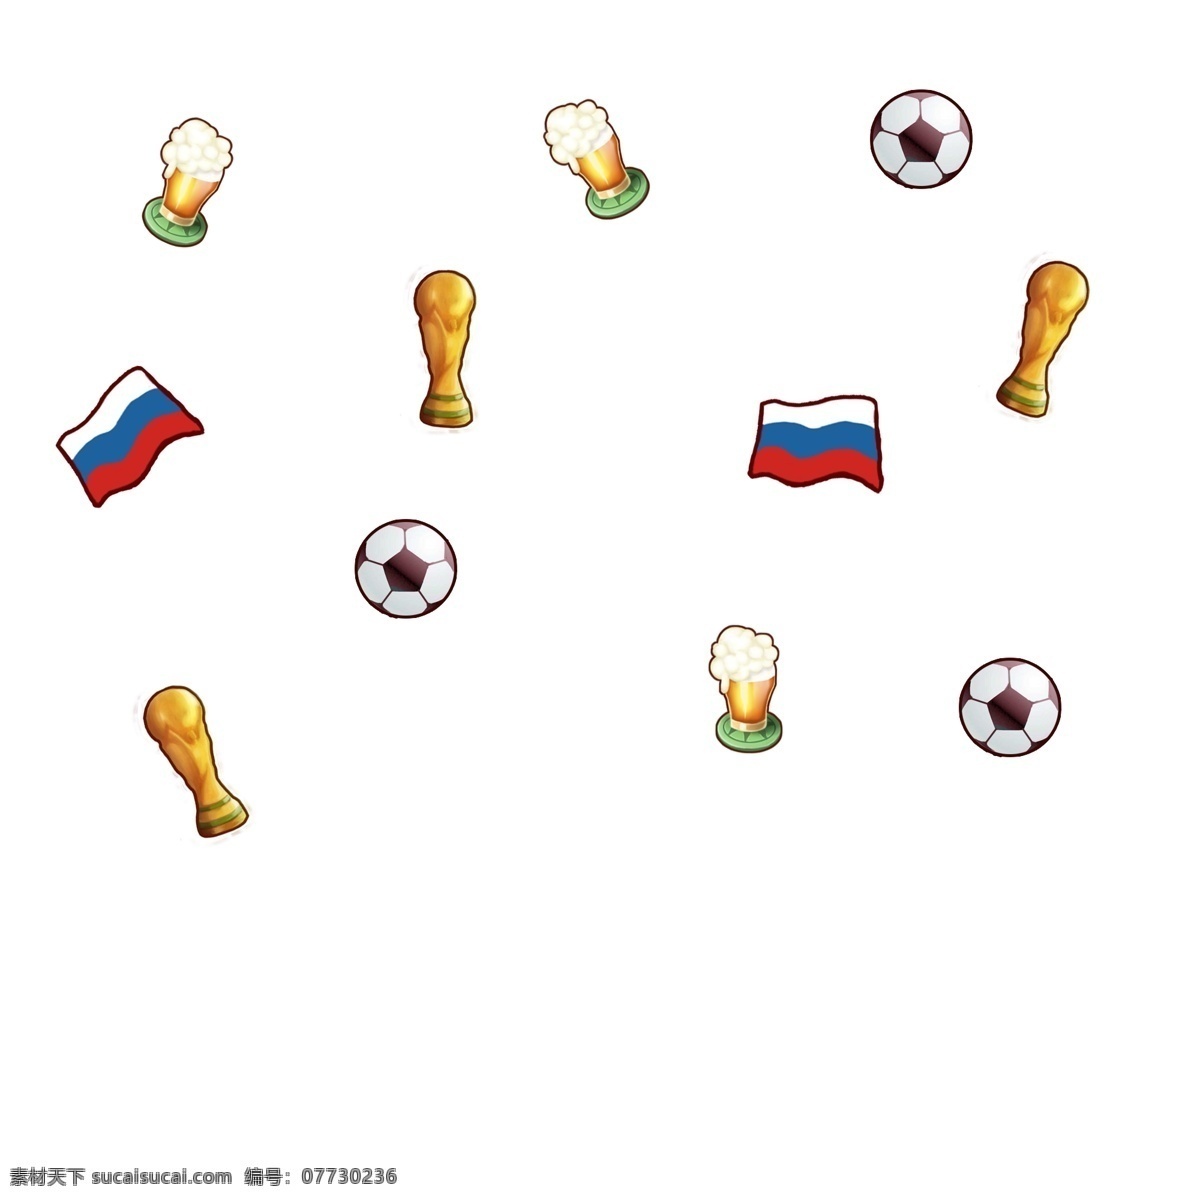 世界杯 俄罗斯 俄罗斯世界杯 啤酒 酒杯 漂浮 手绘 足球 装饰 大力神杯 冠军 比赛 国旗